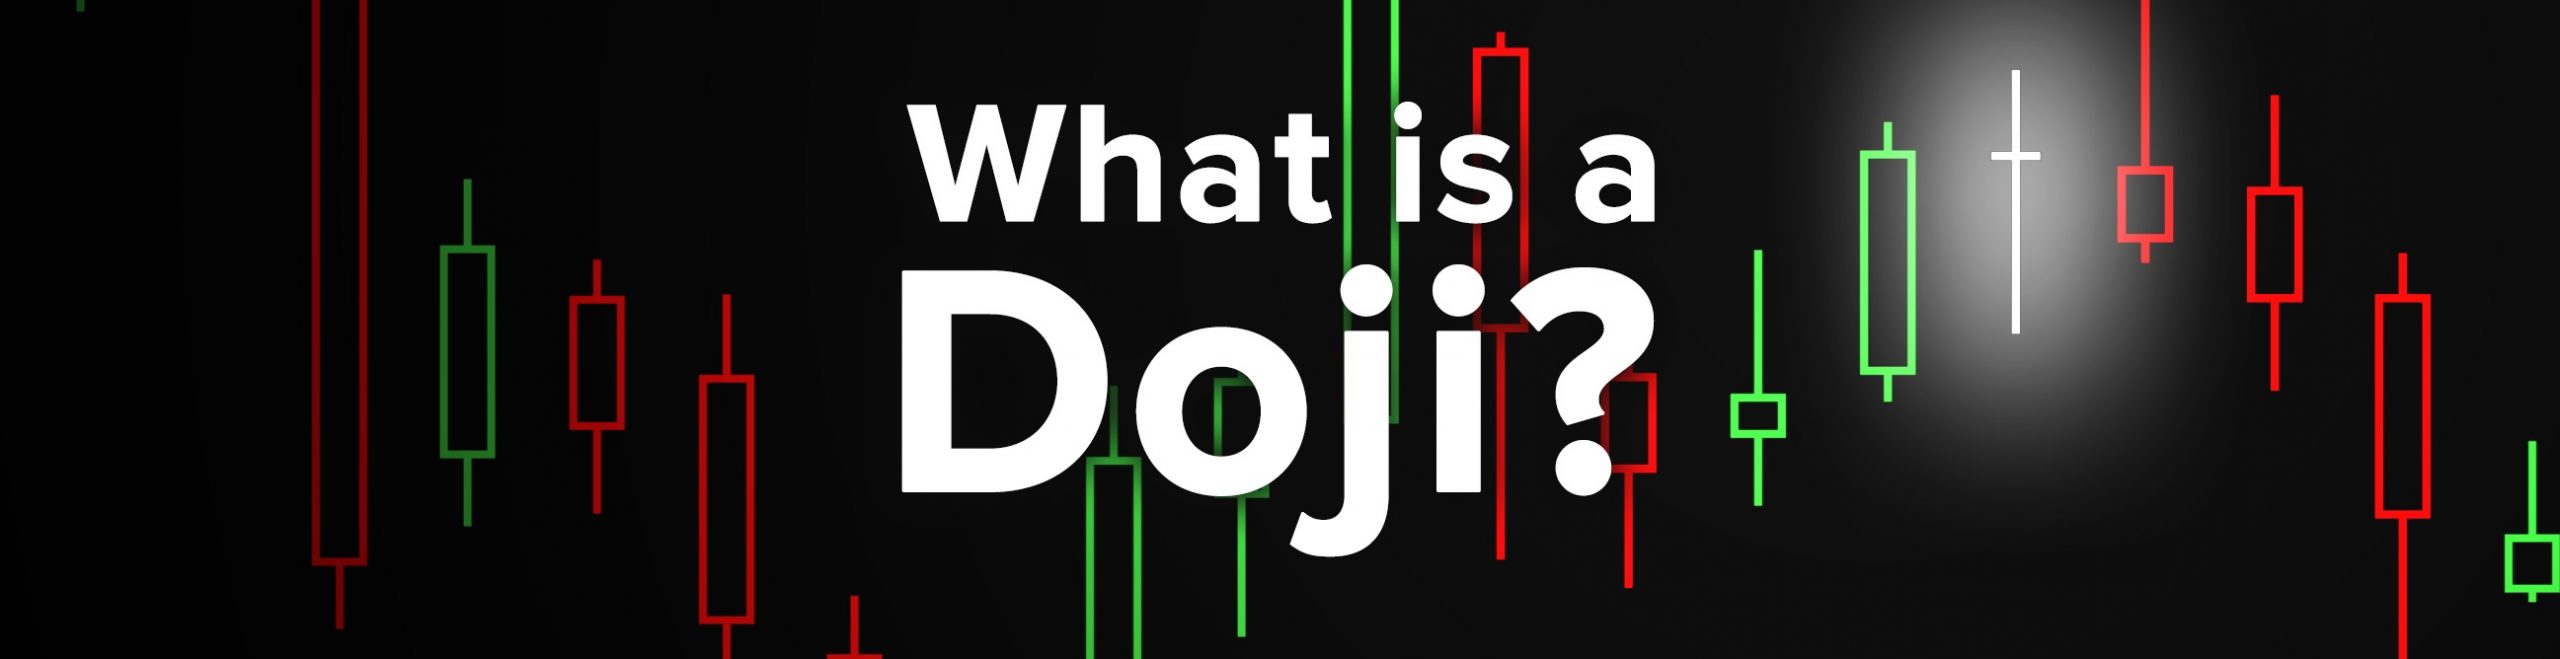 Nến Doji và thông tin mô hình nến Nhật đảo chiều